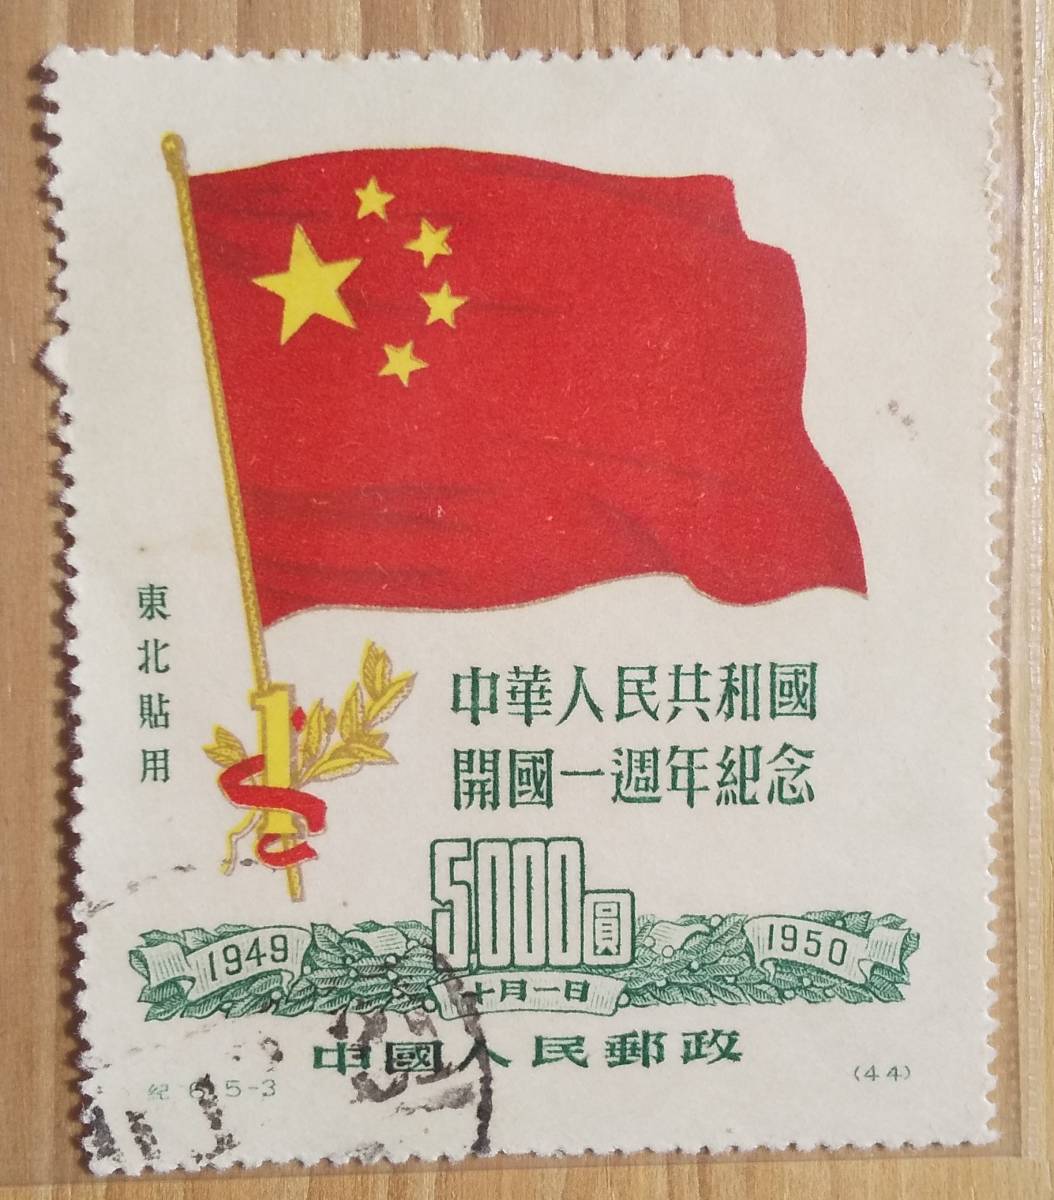 中華人民共和国開国一周年記念 伍仟圓 中國人民郵政 消印つき 新作通販